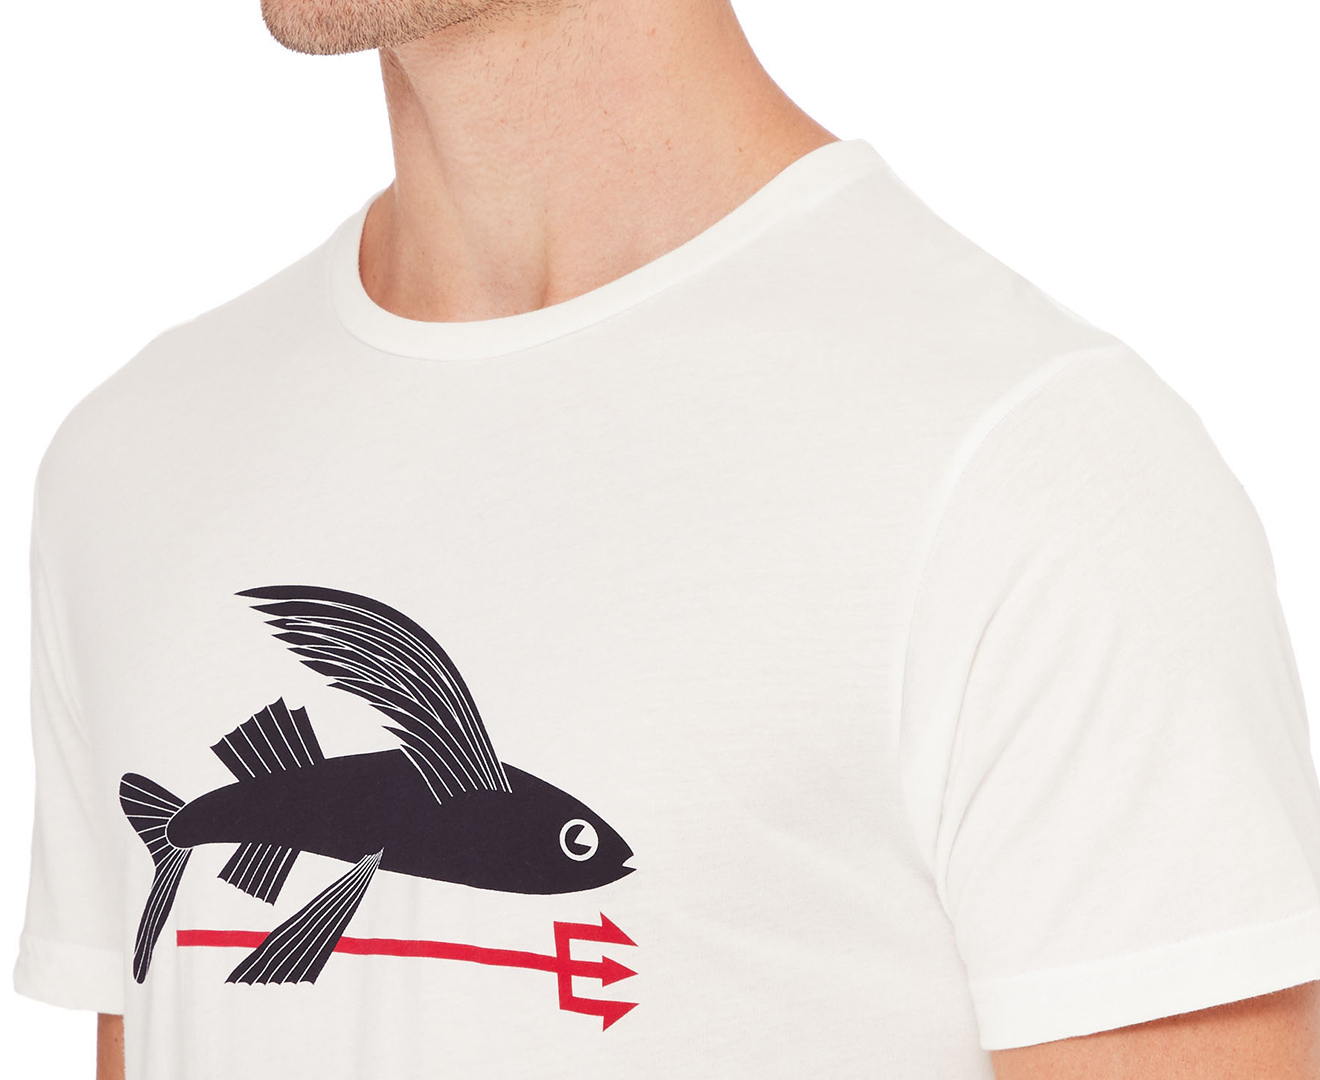 Patagonia Flying Fish Organic Cotton T-Shirt - Men's